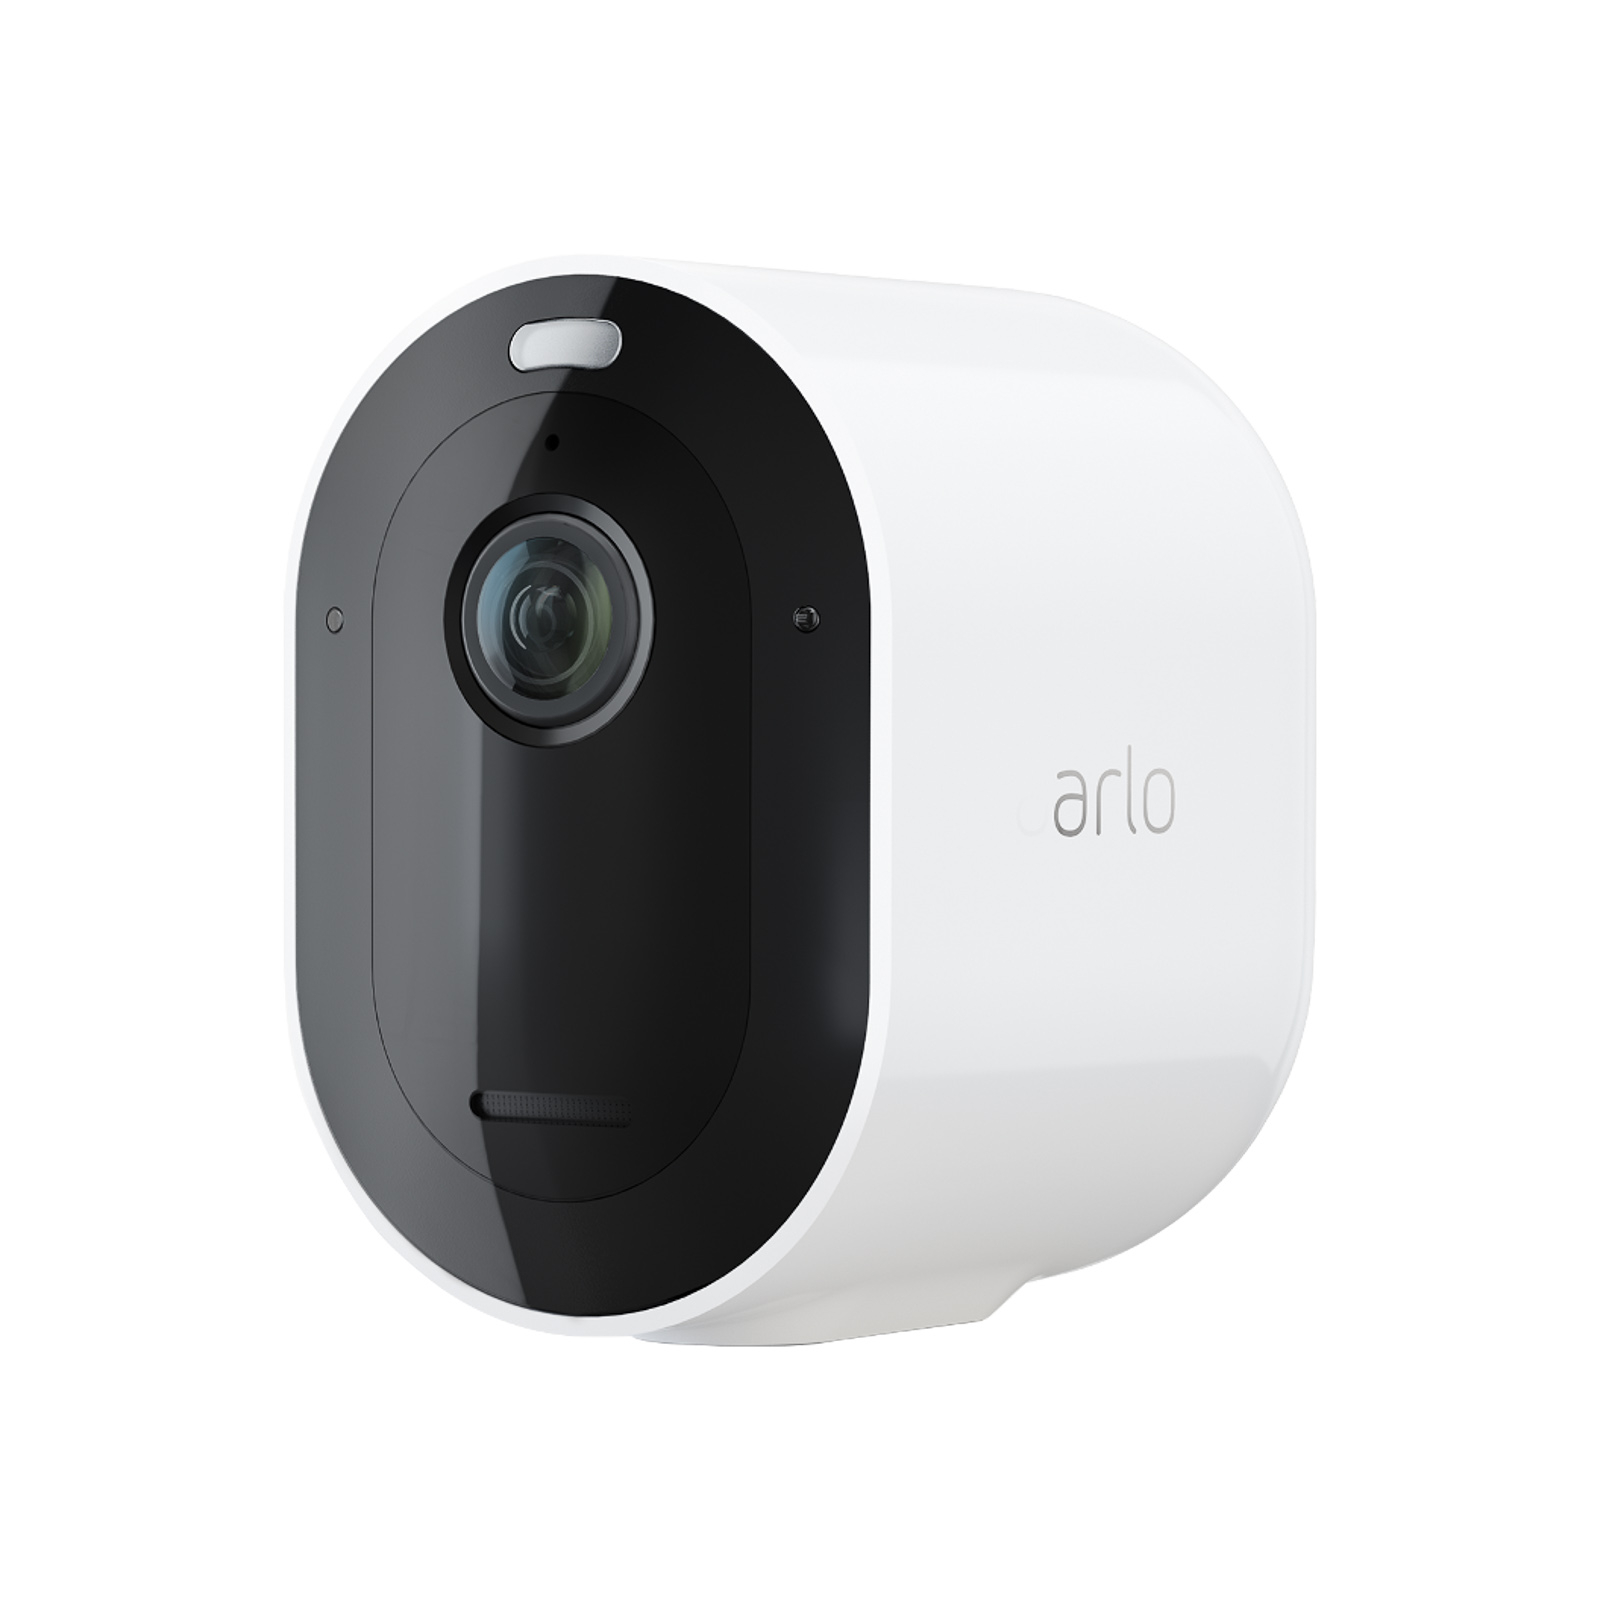 Arlo Pro 3 système surveillance à 4 caméras, blanc